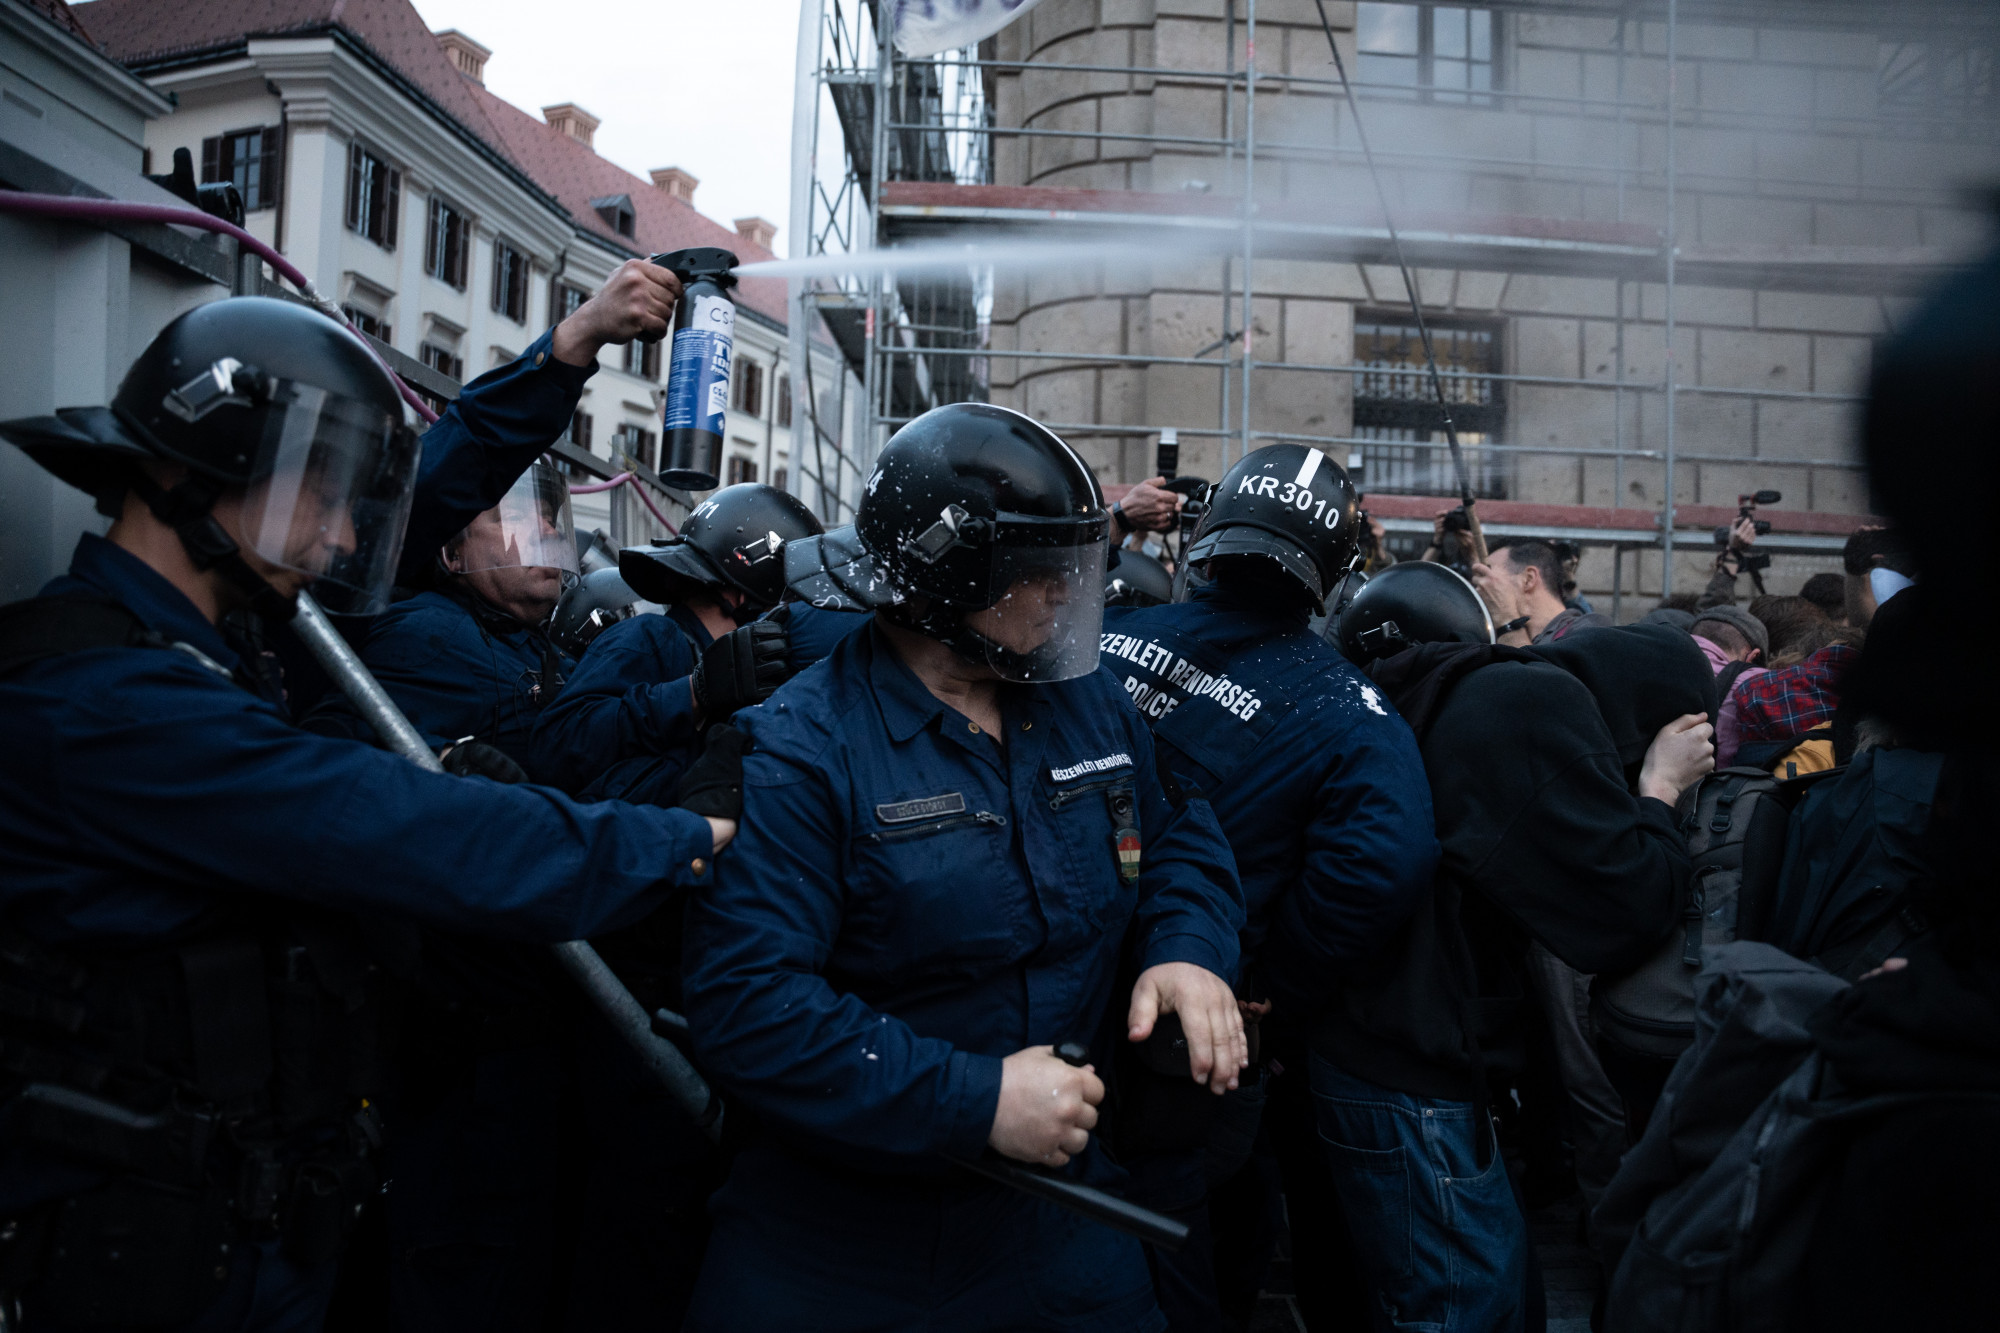 Rendőrség: Öt embert állítottak elő a Karmelitánál